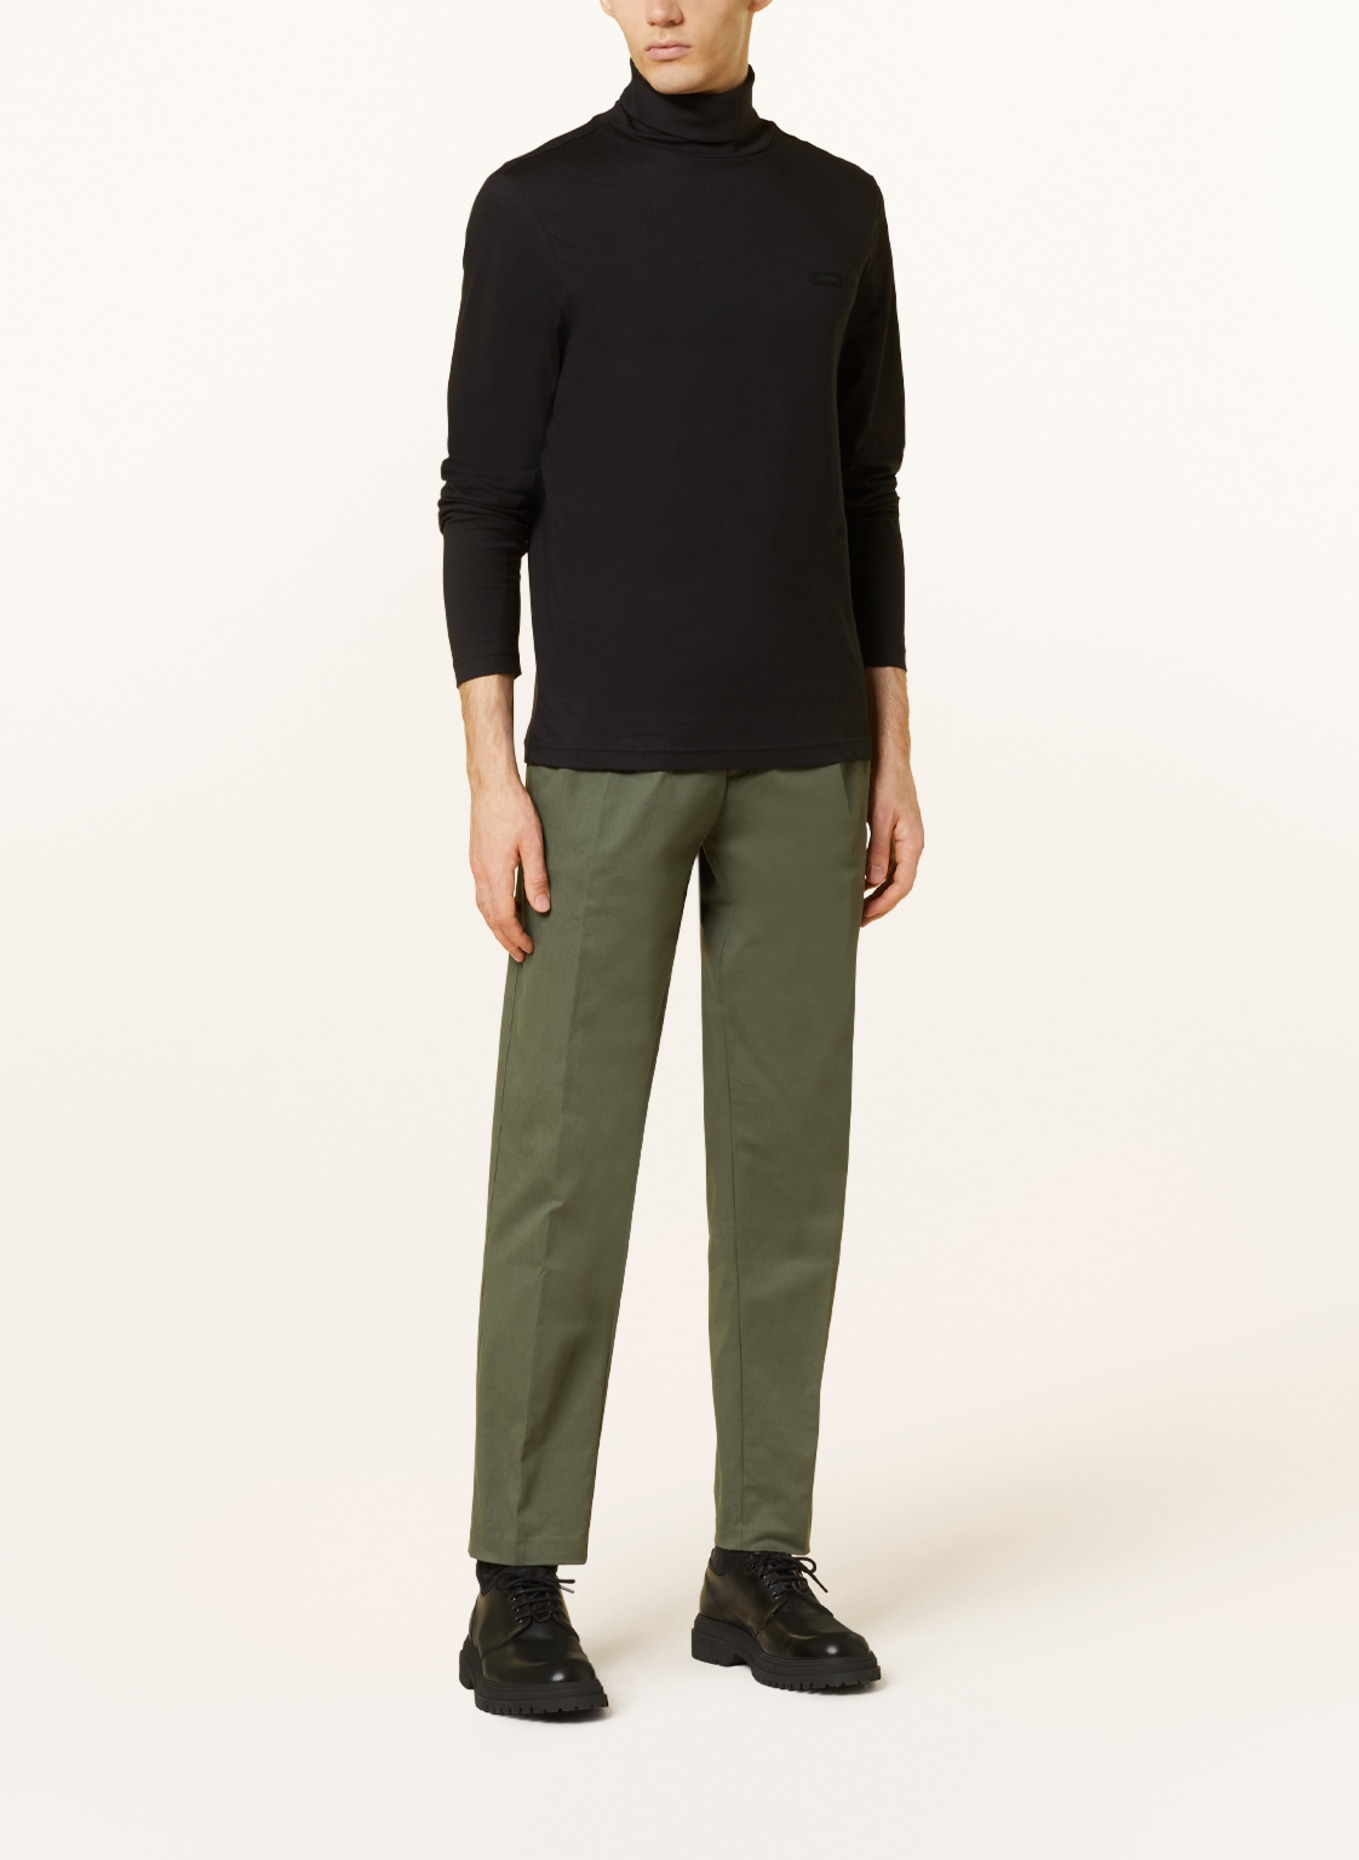 Calvin Klein Turtleneck shirt, Color: BLACK (Image 2)